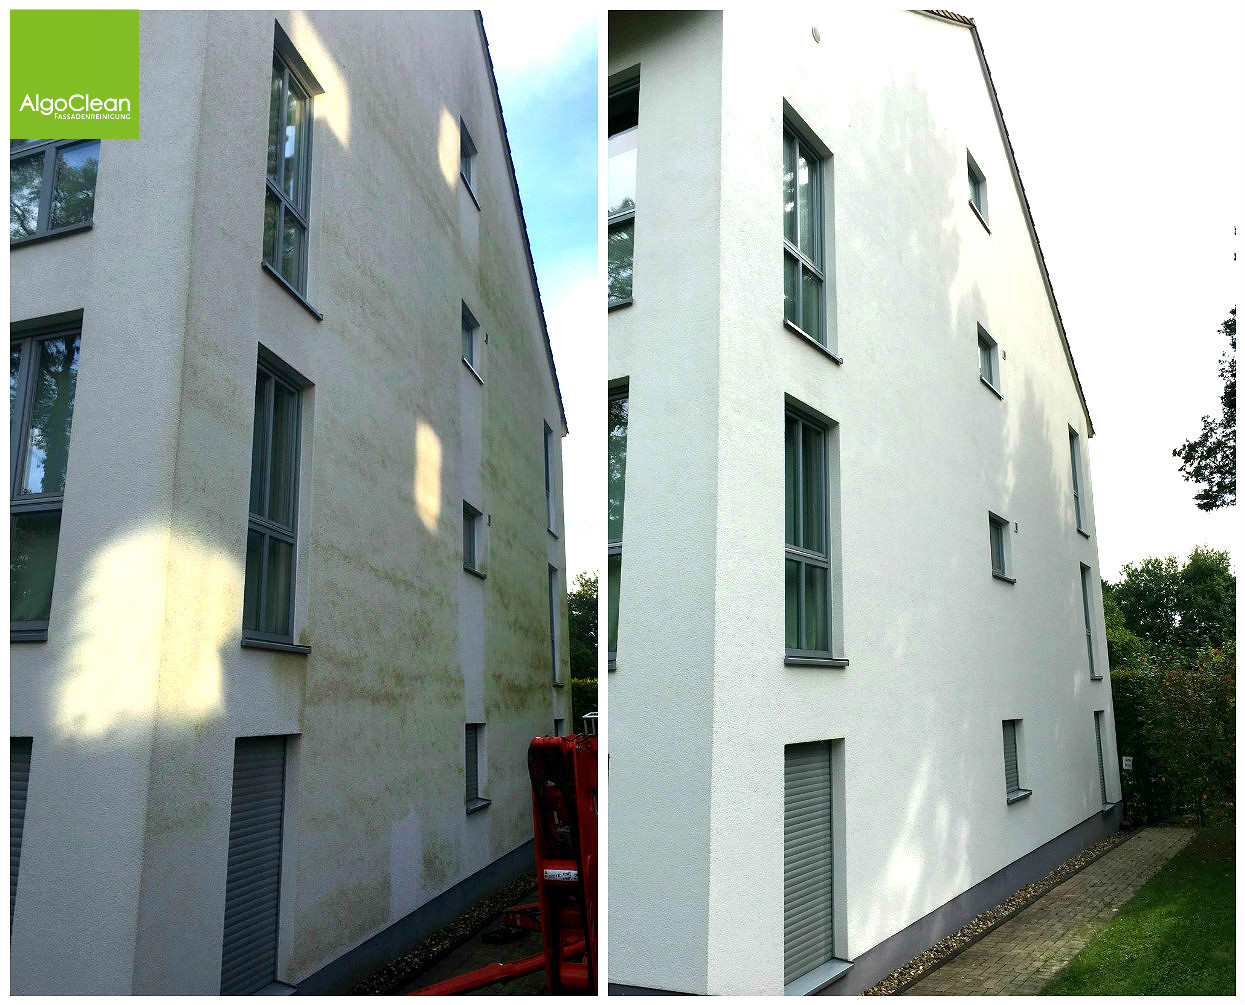 Algenentfernung an Fassaden – Vorher und Nachher im Vergleich